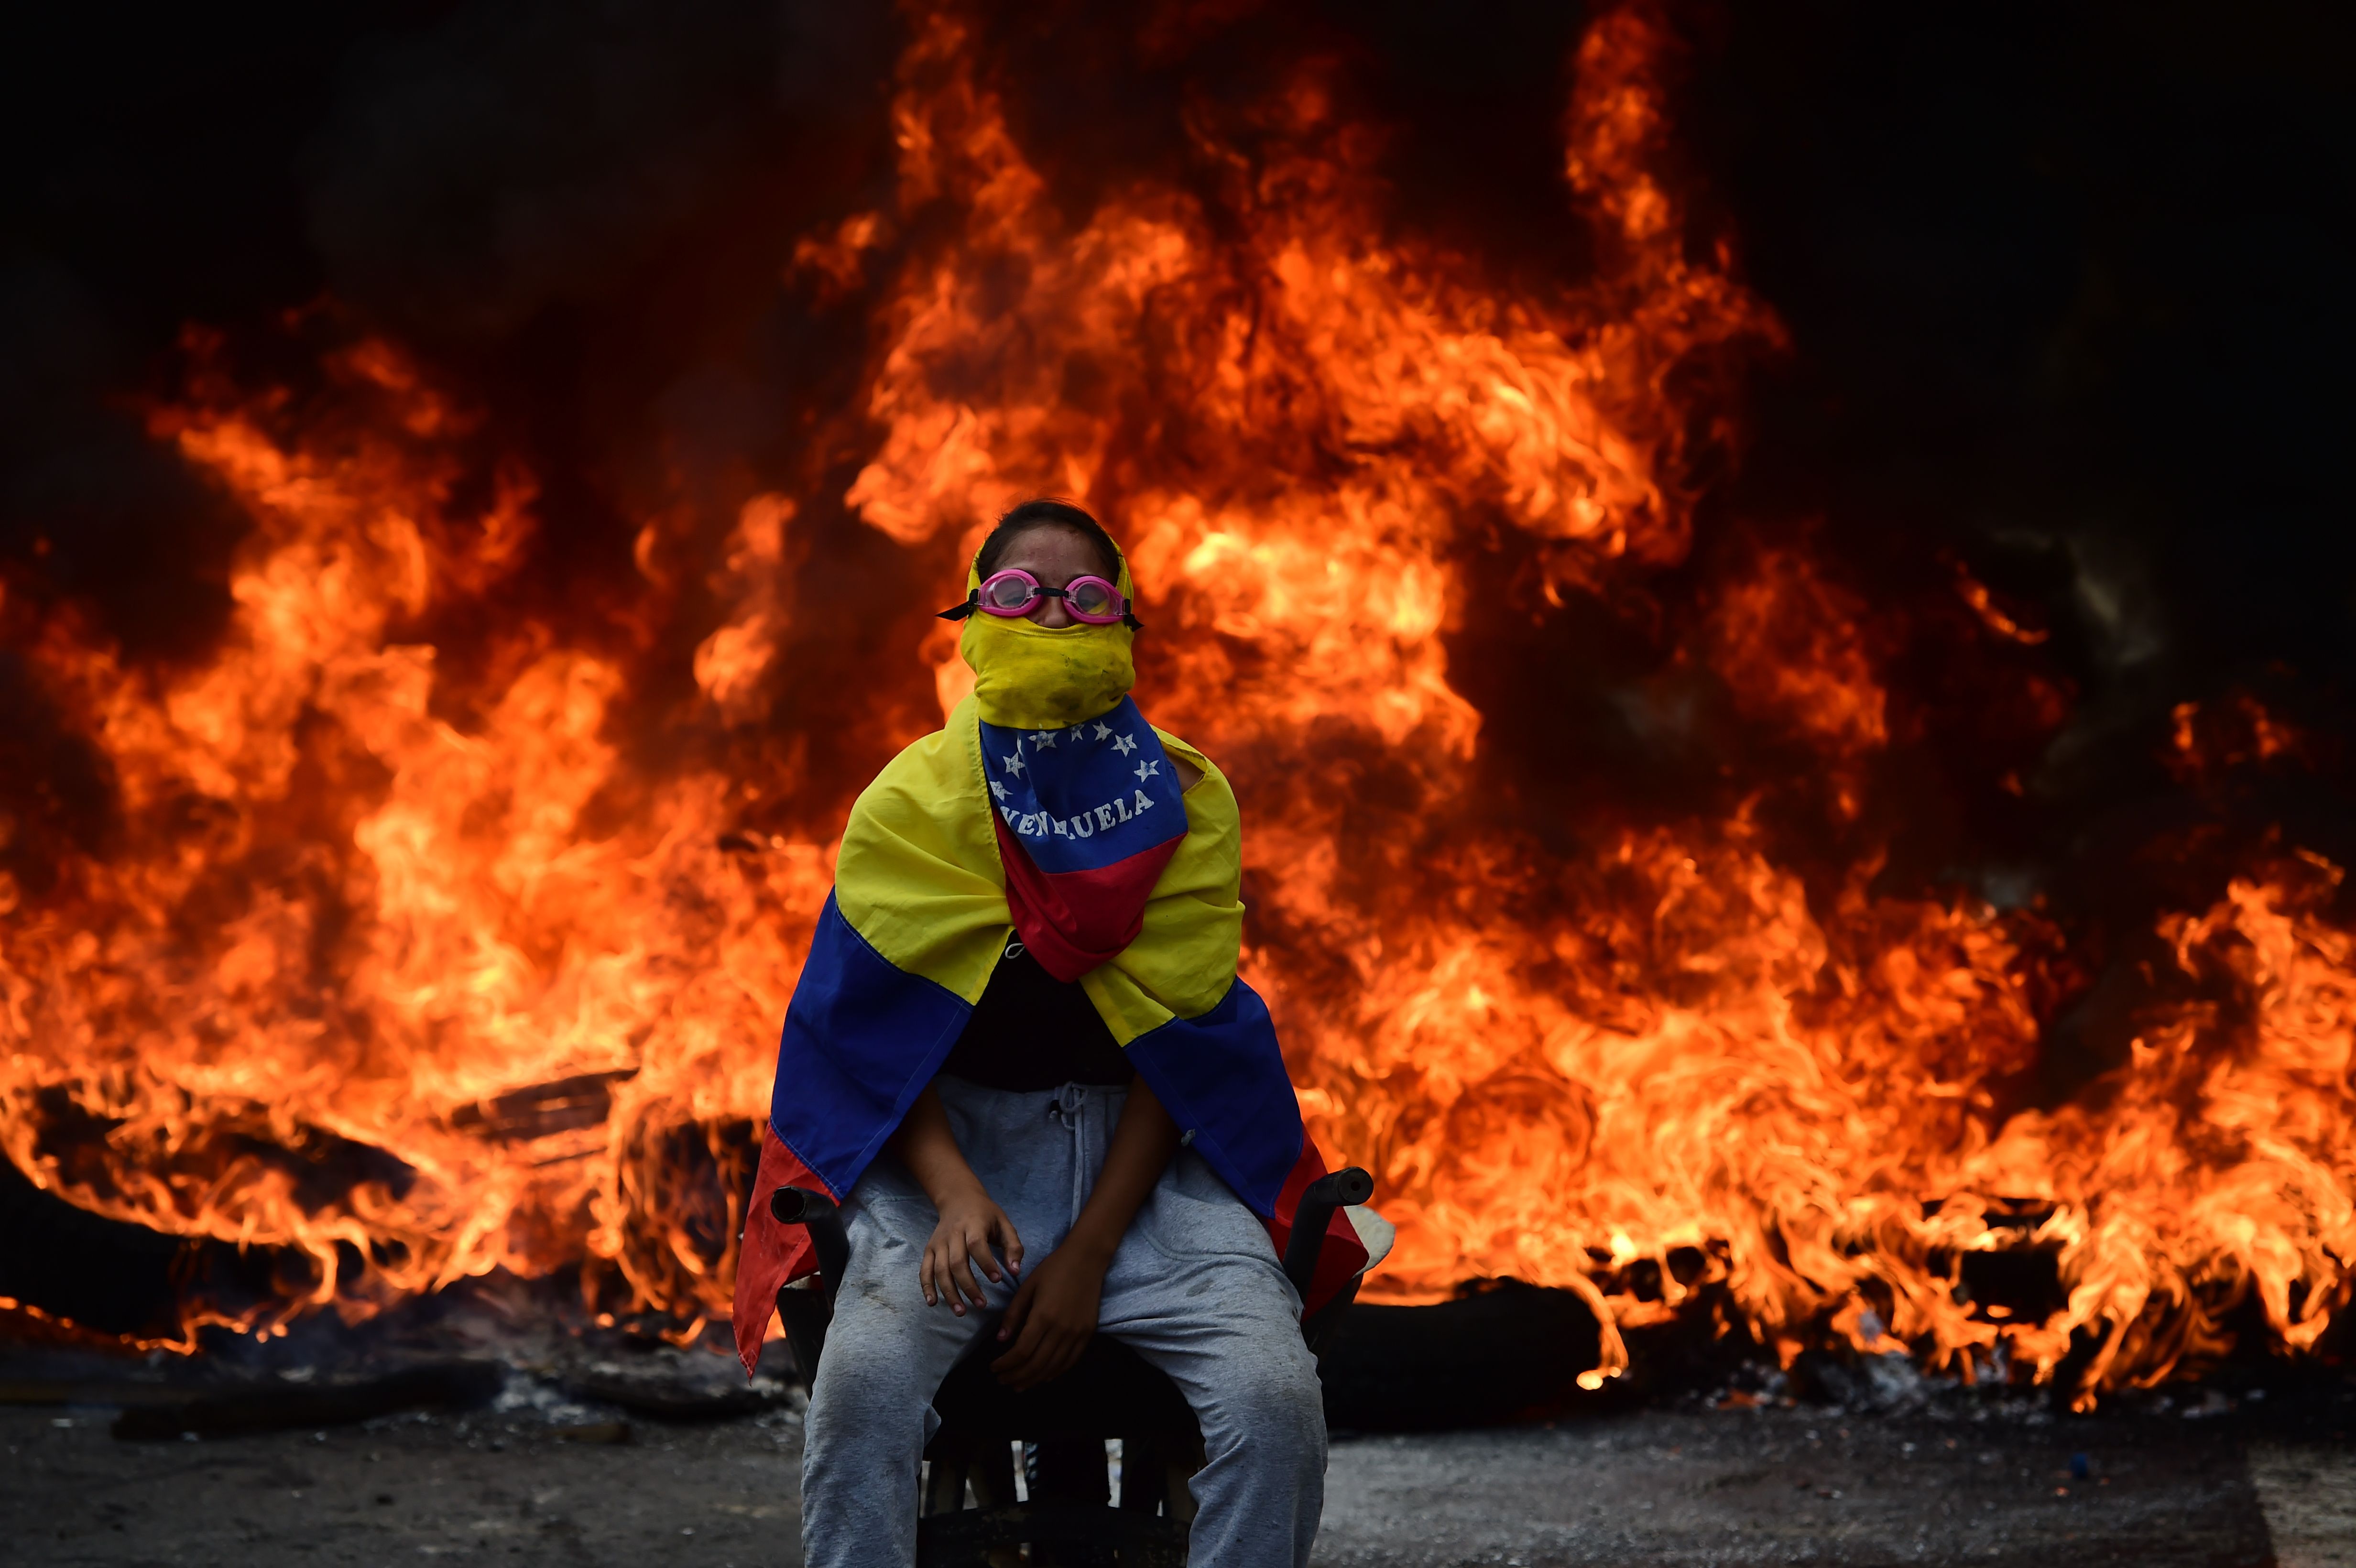 EU lanza alerta de viajes a Venezuela ante "agitación social, violencia y escasez"